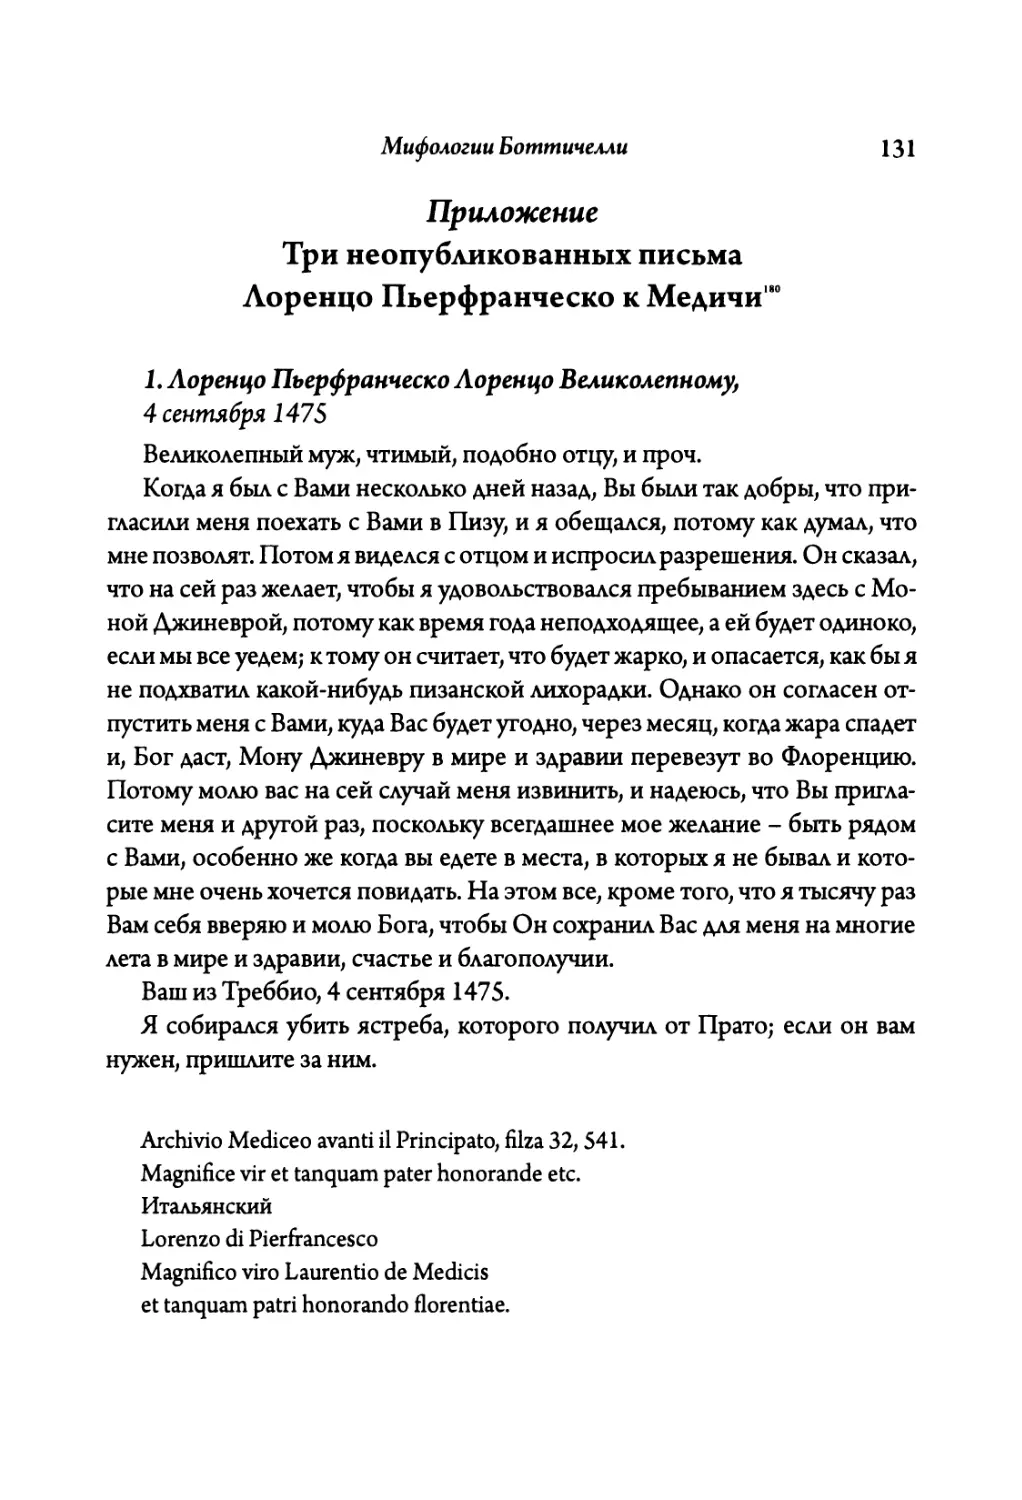 Приложение: Три неопубликованных письма Лоренцо ди Пьерфранческо кМедичи